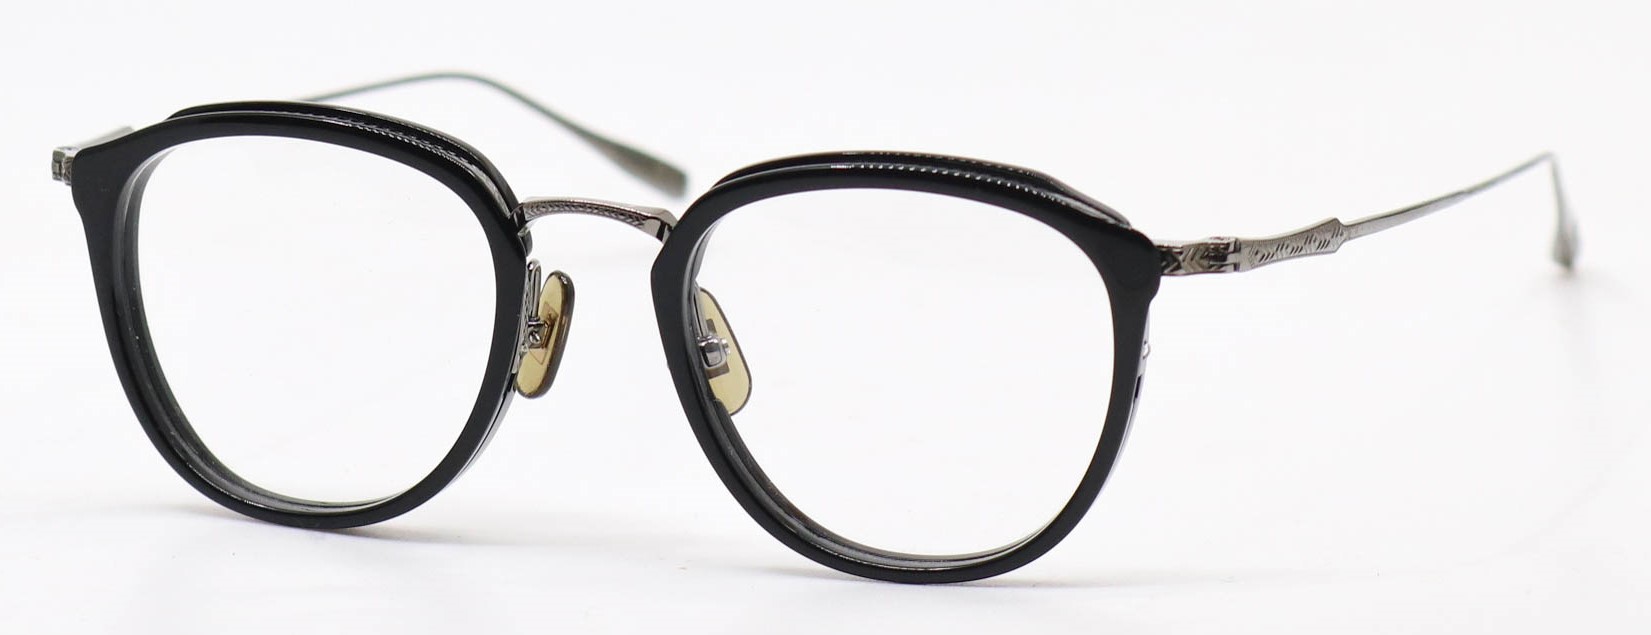 眼鏡のカラータイプC-1 Black/Gray